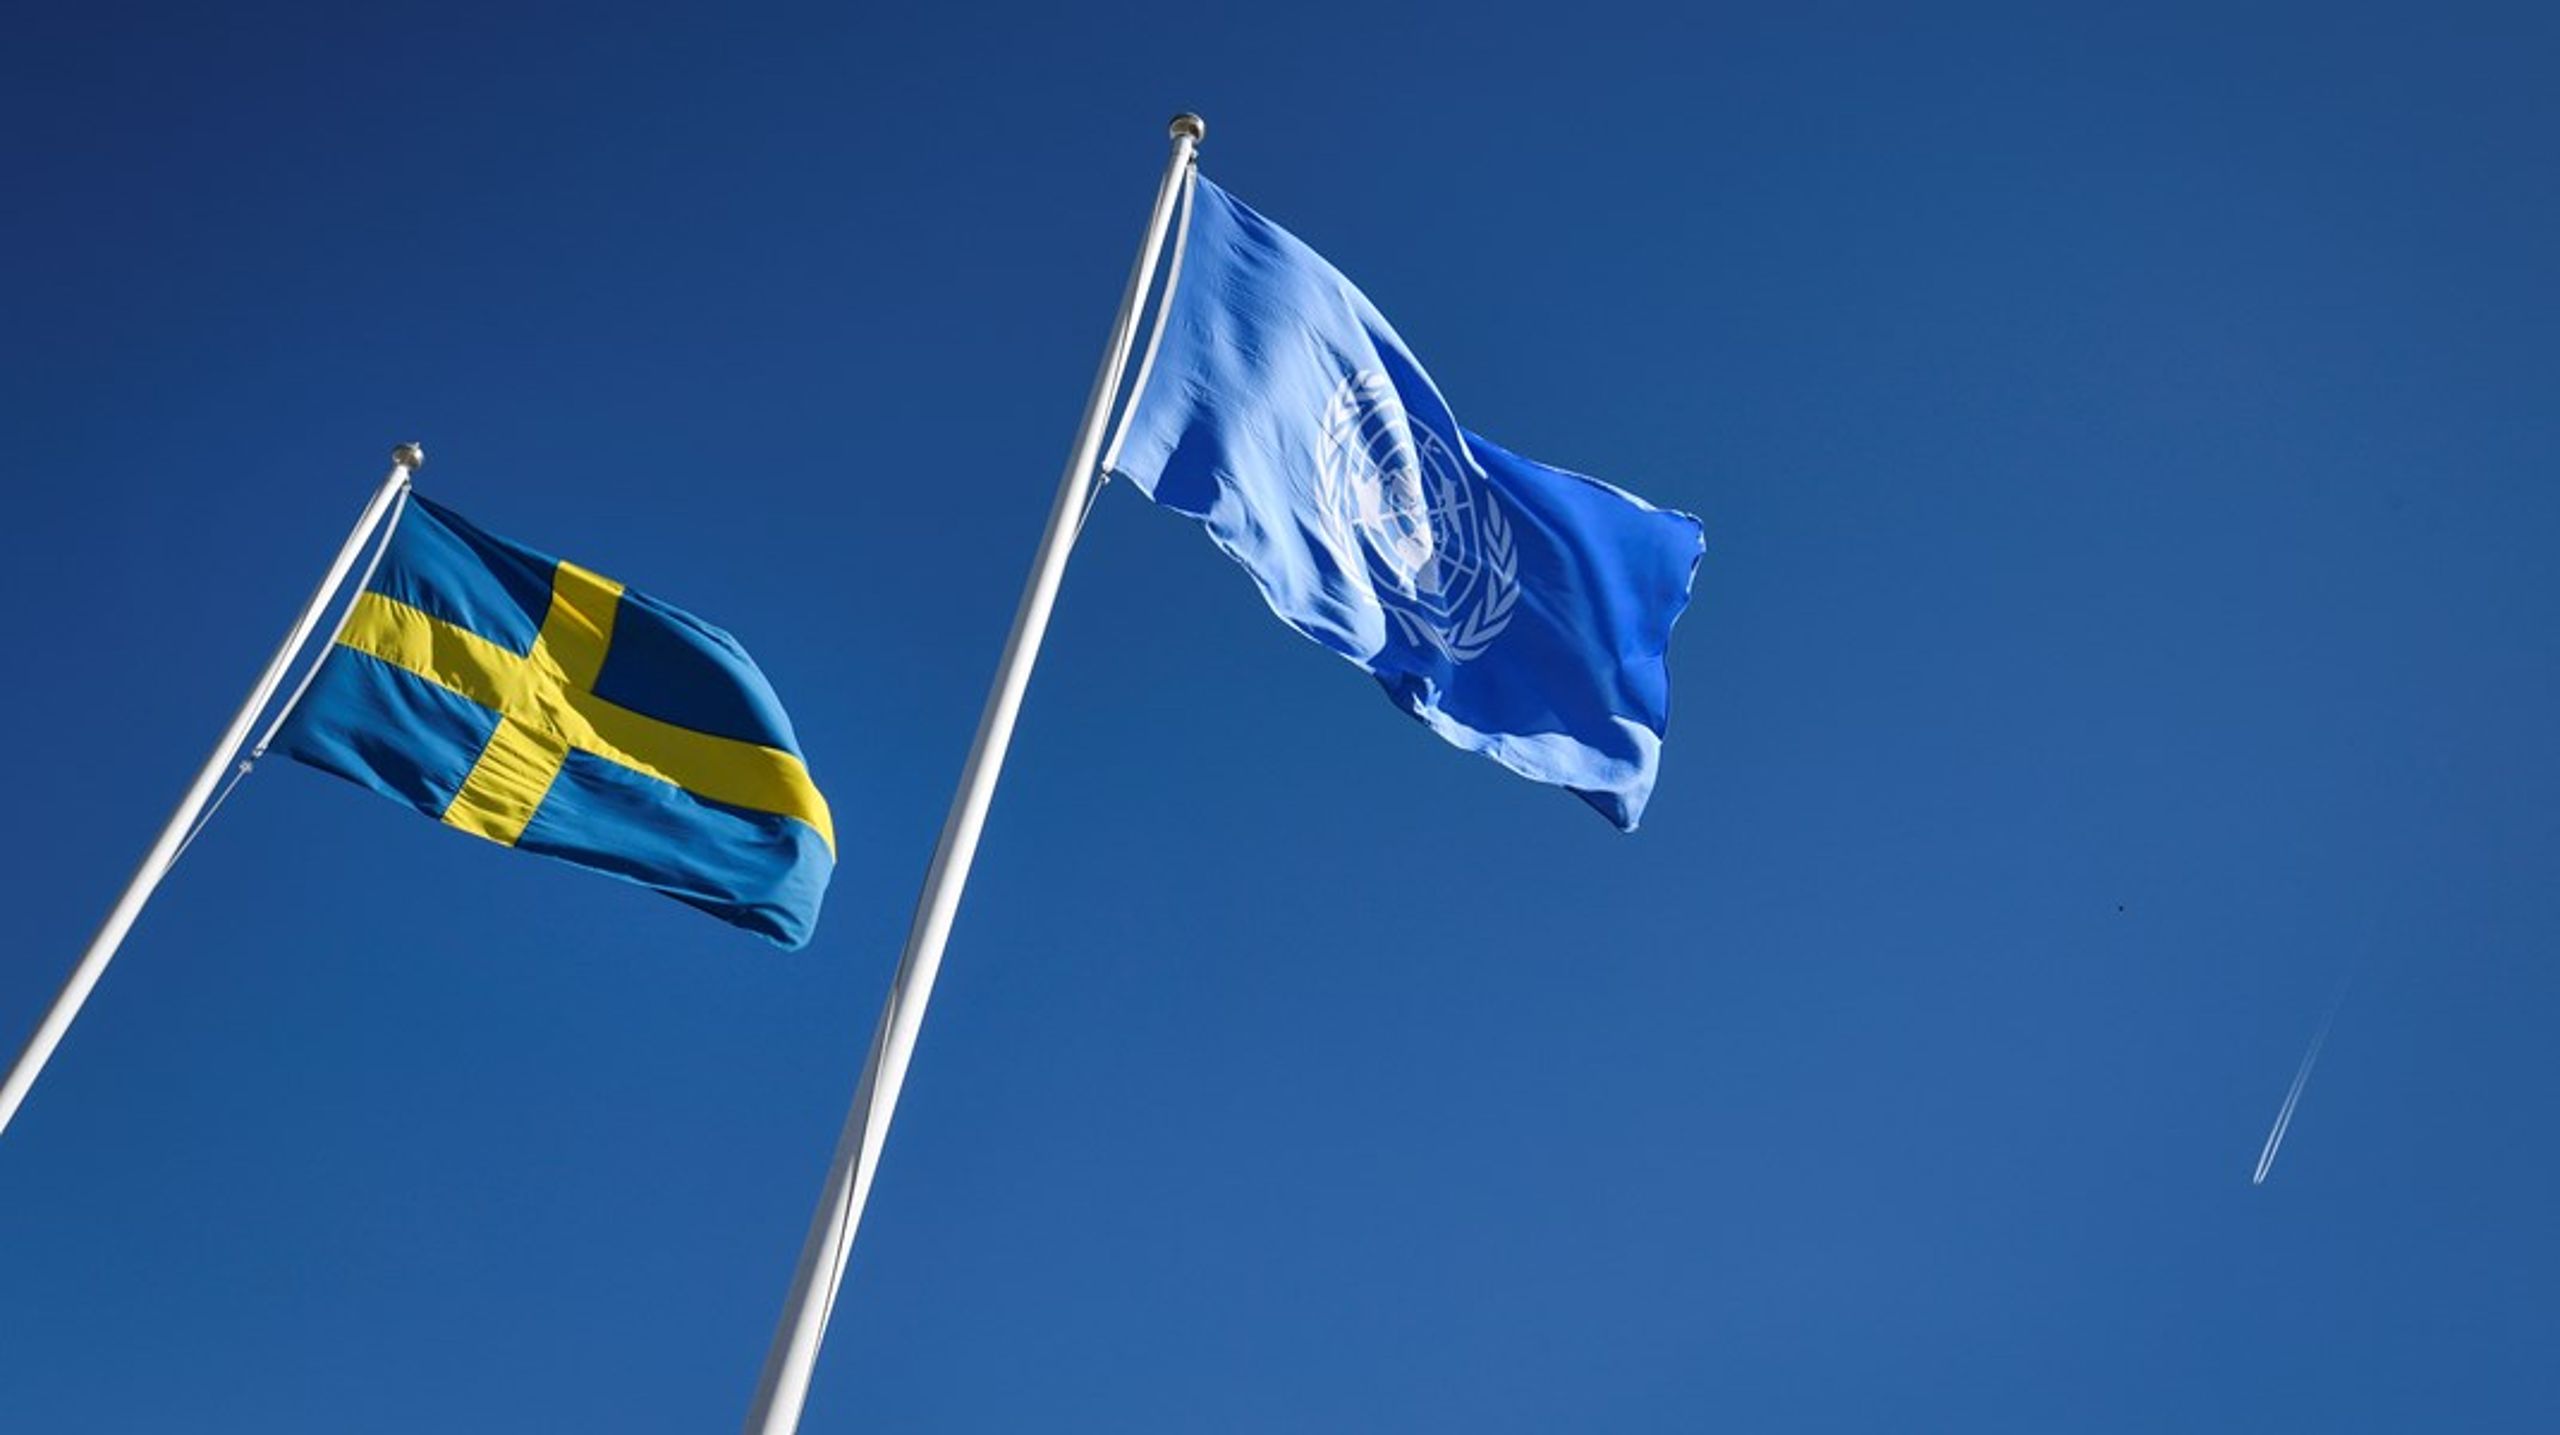 ”Sverige har åtagit sig att följa barnkonventionen. Men flera utredningar pekar på att myndigheter och andra rättstillämpare är osäkra på hur barnkonventionen ska tolkas och tillämpas”, menar riksrevisor Helena Lindberg.